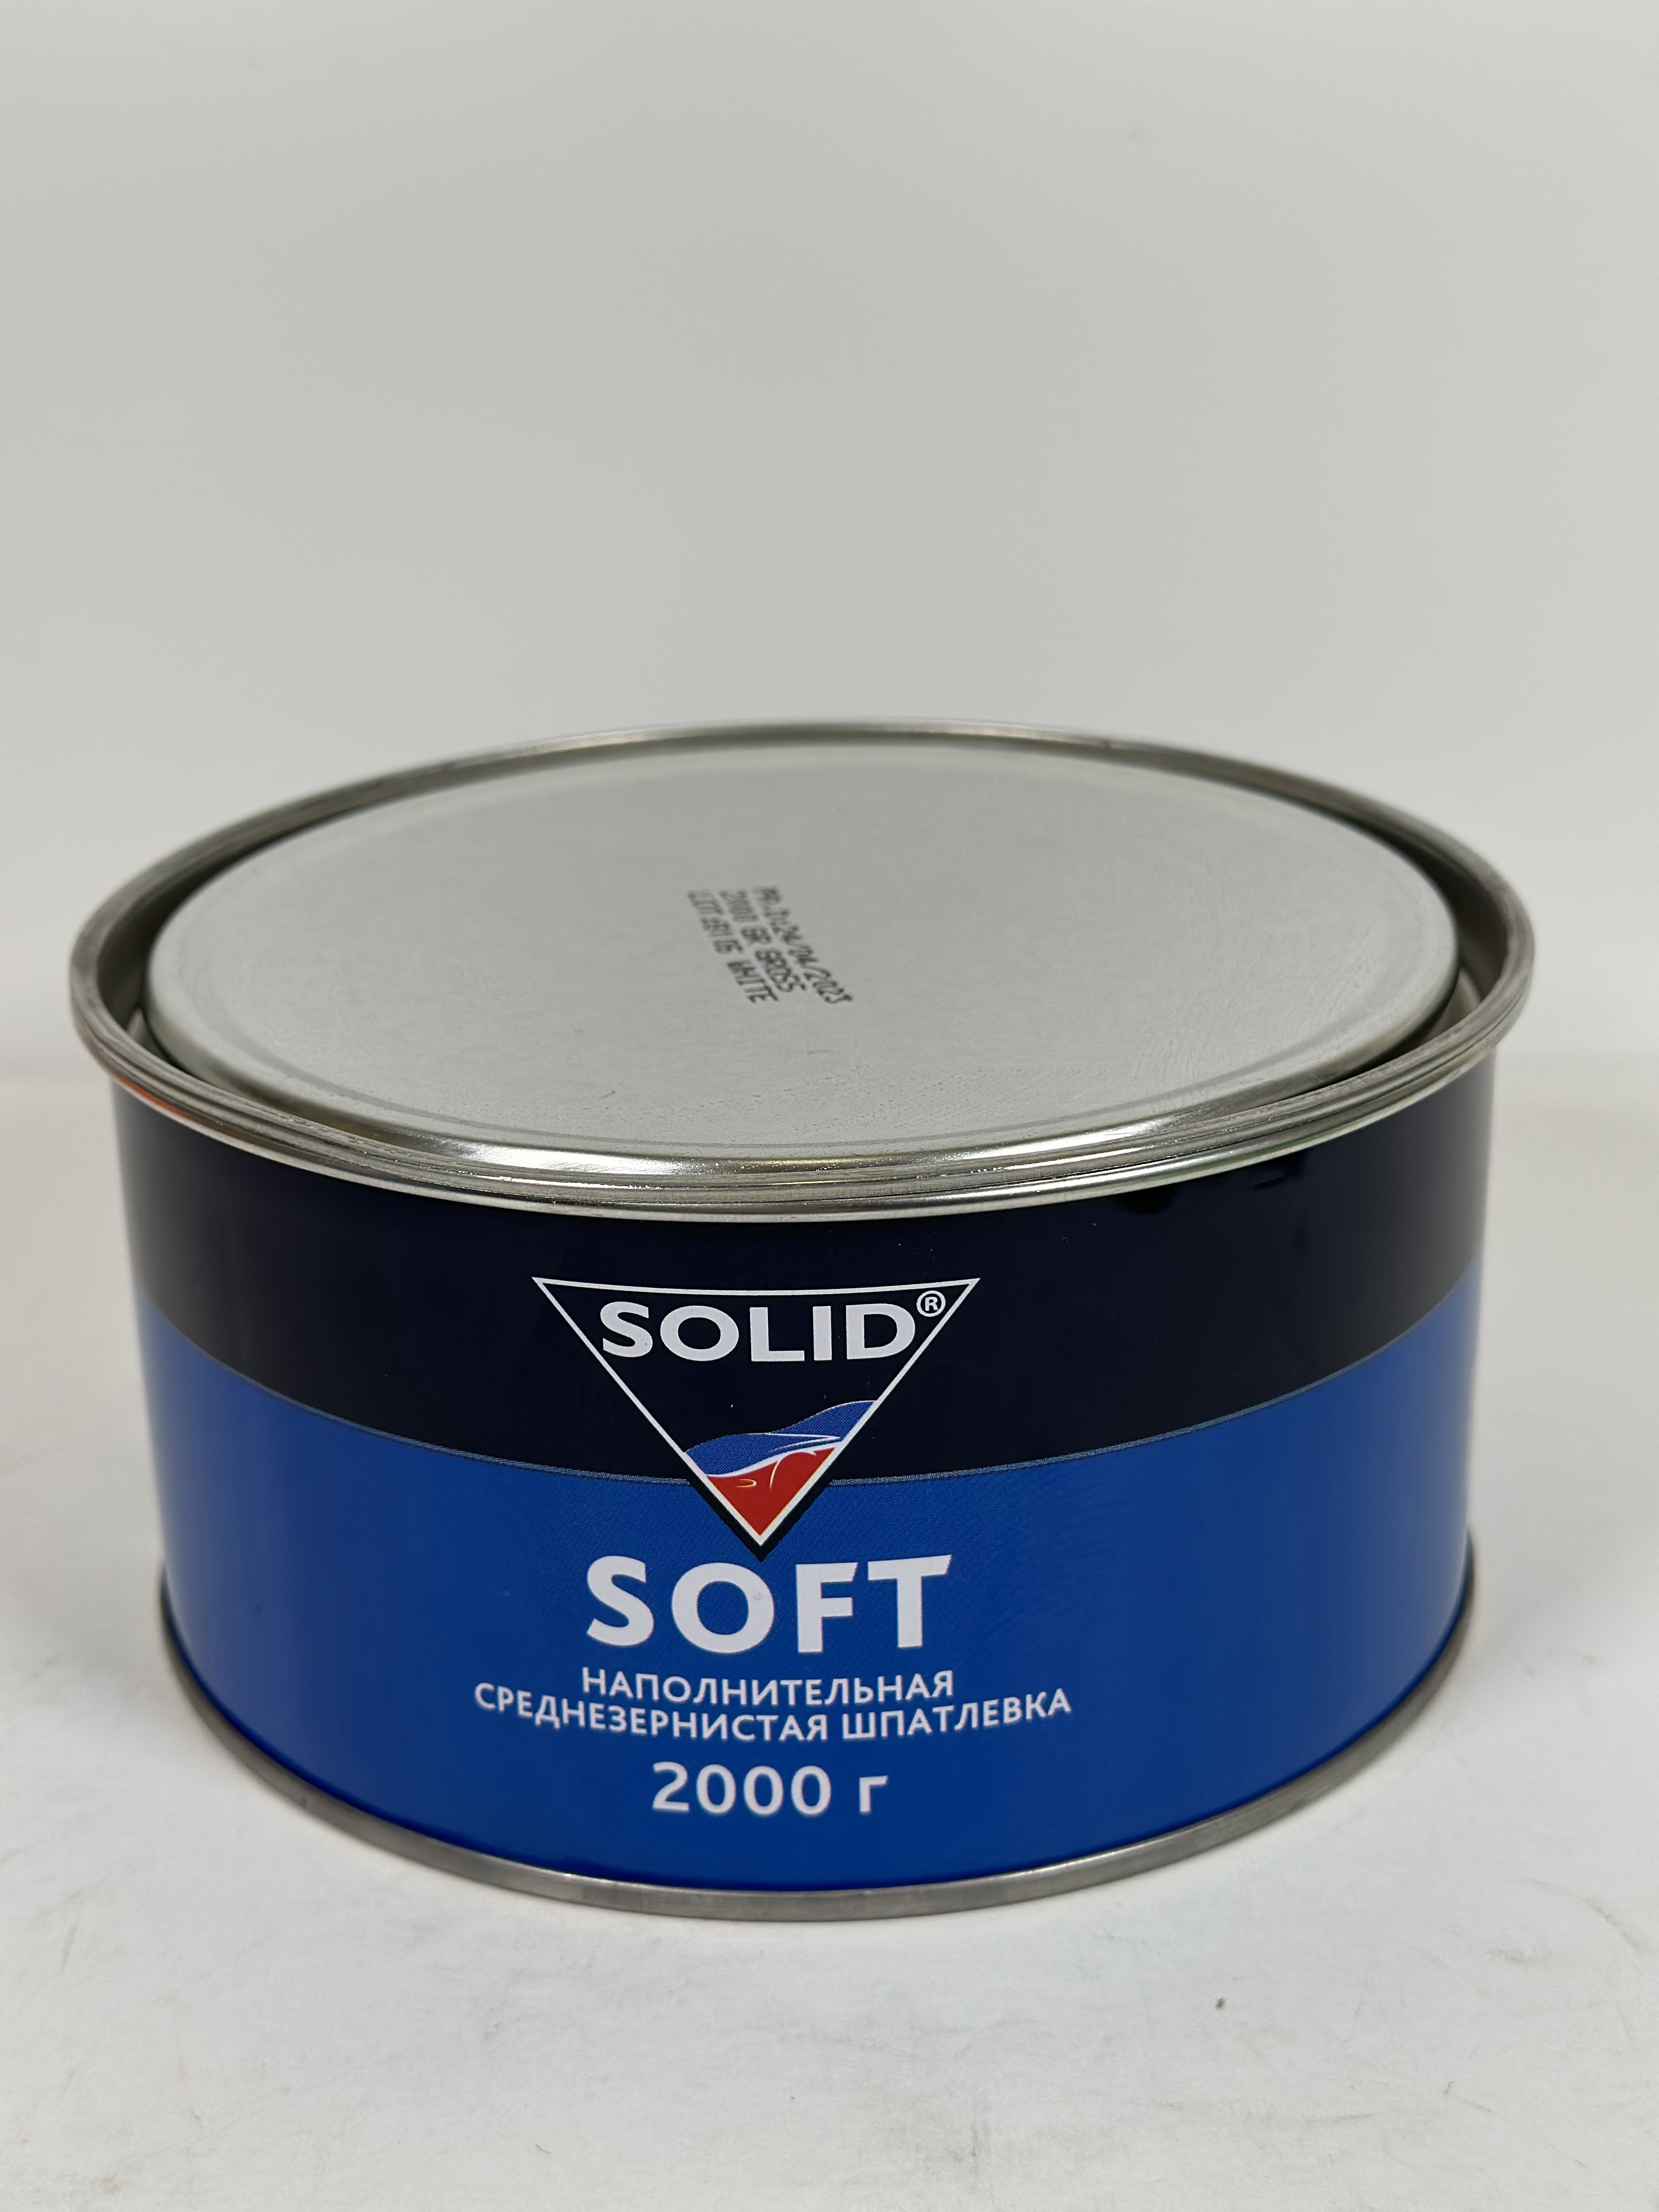 0242.02000 SOLID SOFT - (фасовка 2000 гр) наполнительная среднезернистая шпатлевка (Т)